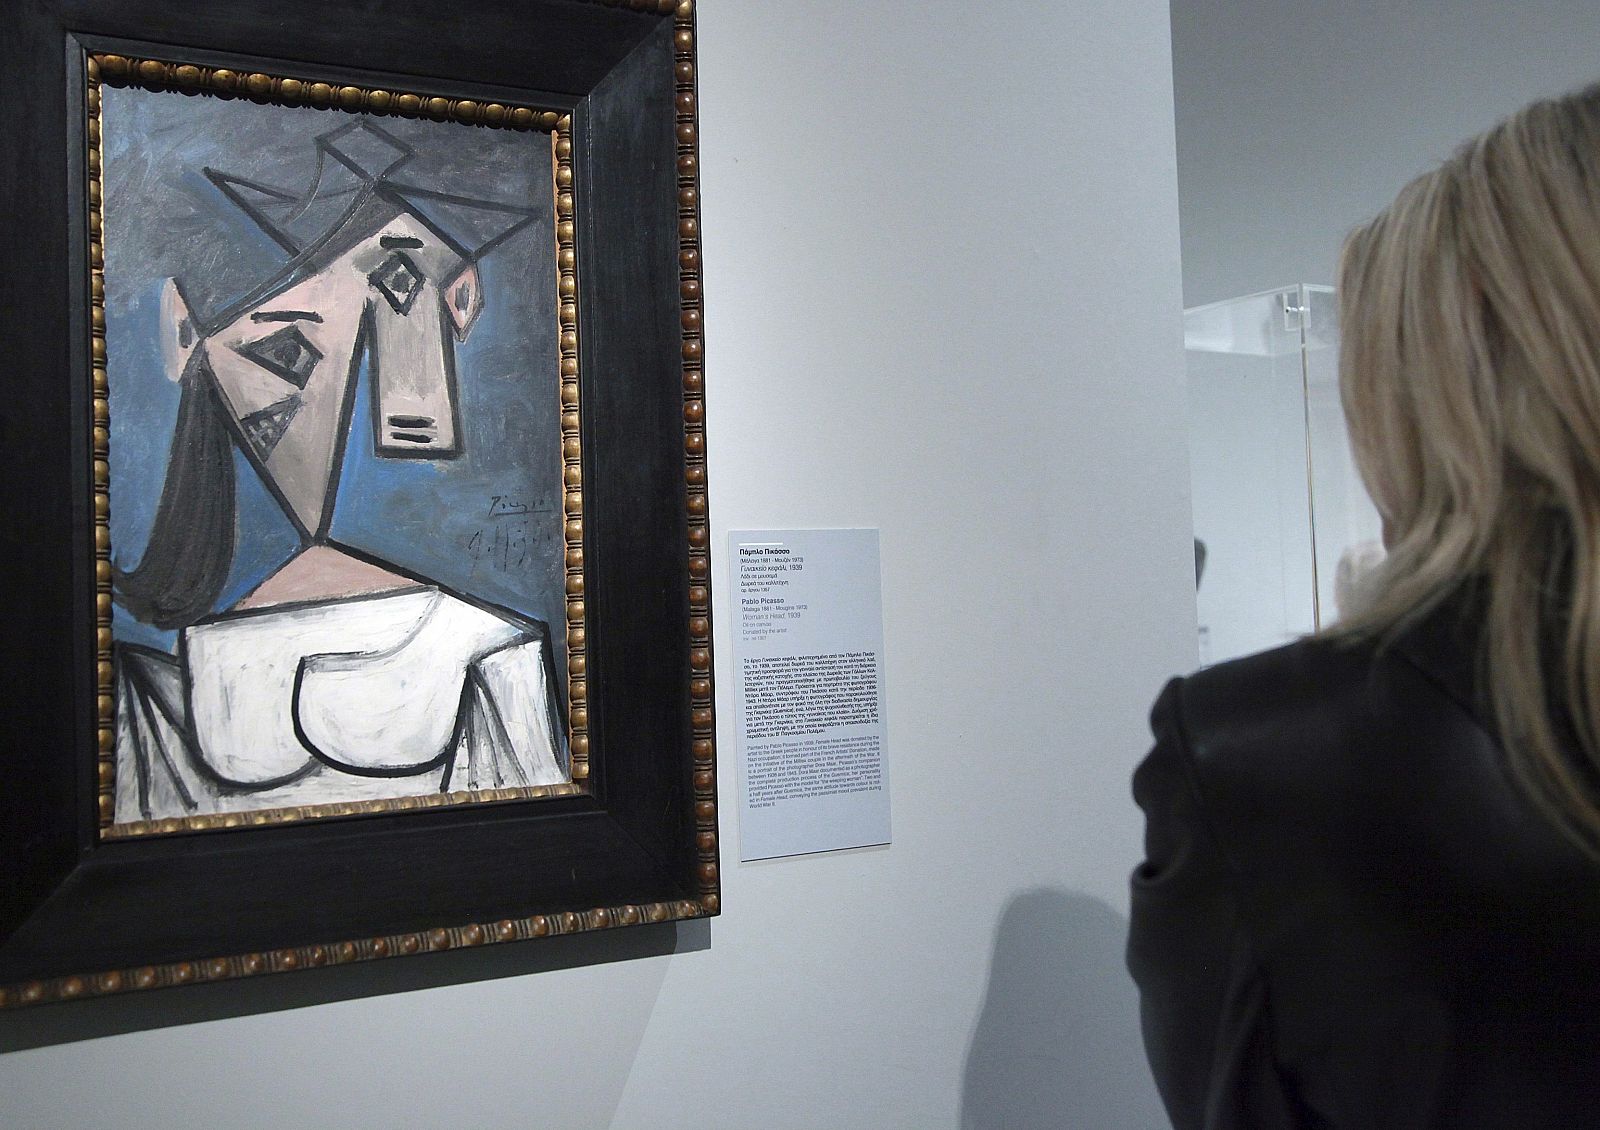 Fotografía archivo del 4 de enero de 2012 que muestra la obra del pintor malagueño Pablo Picasso "Cabeza de Mujer" (1934), en la Galería Nacional de Atenas (Grecia)